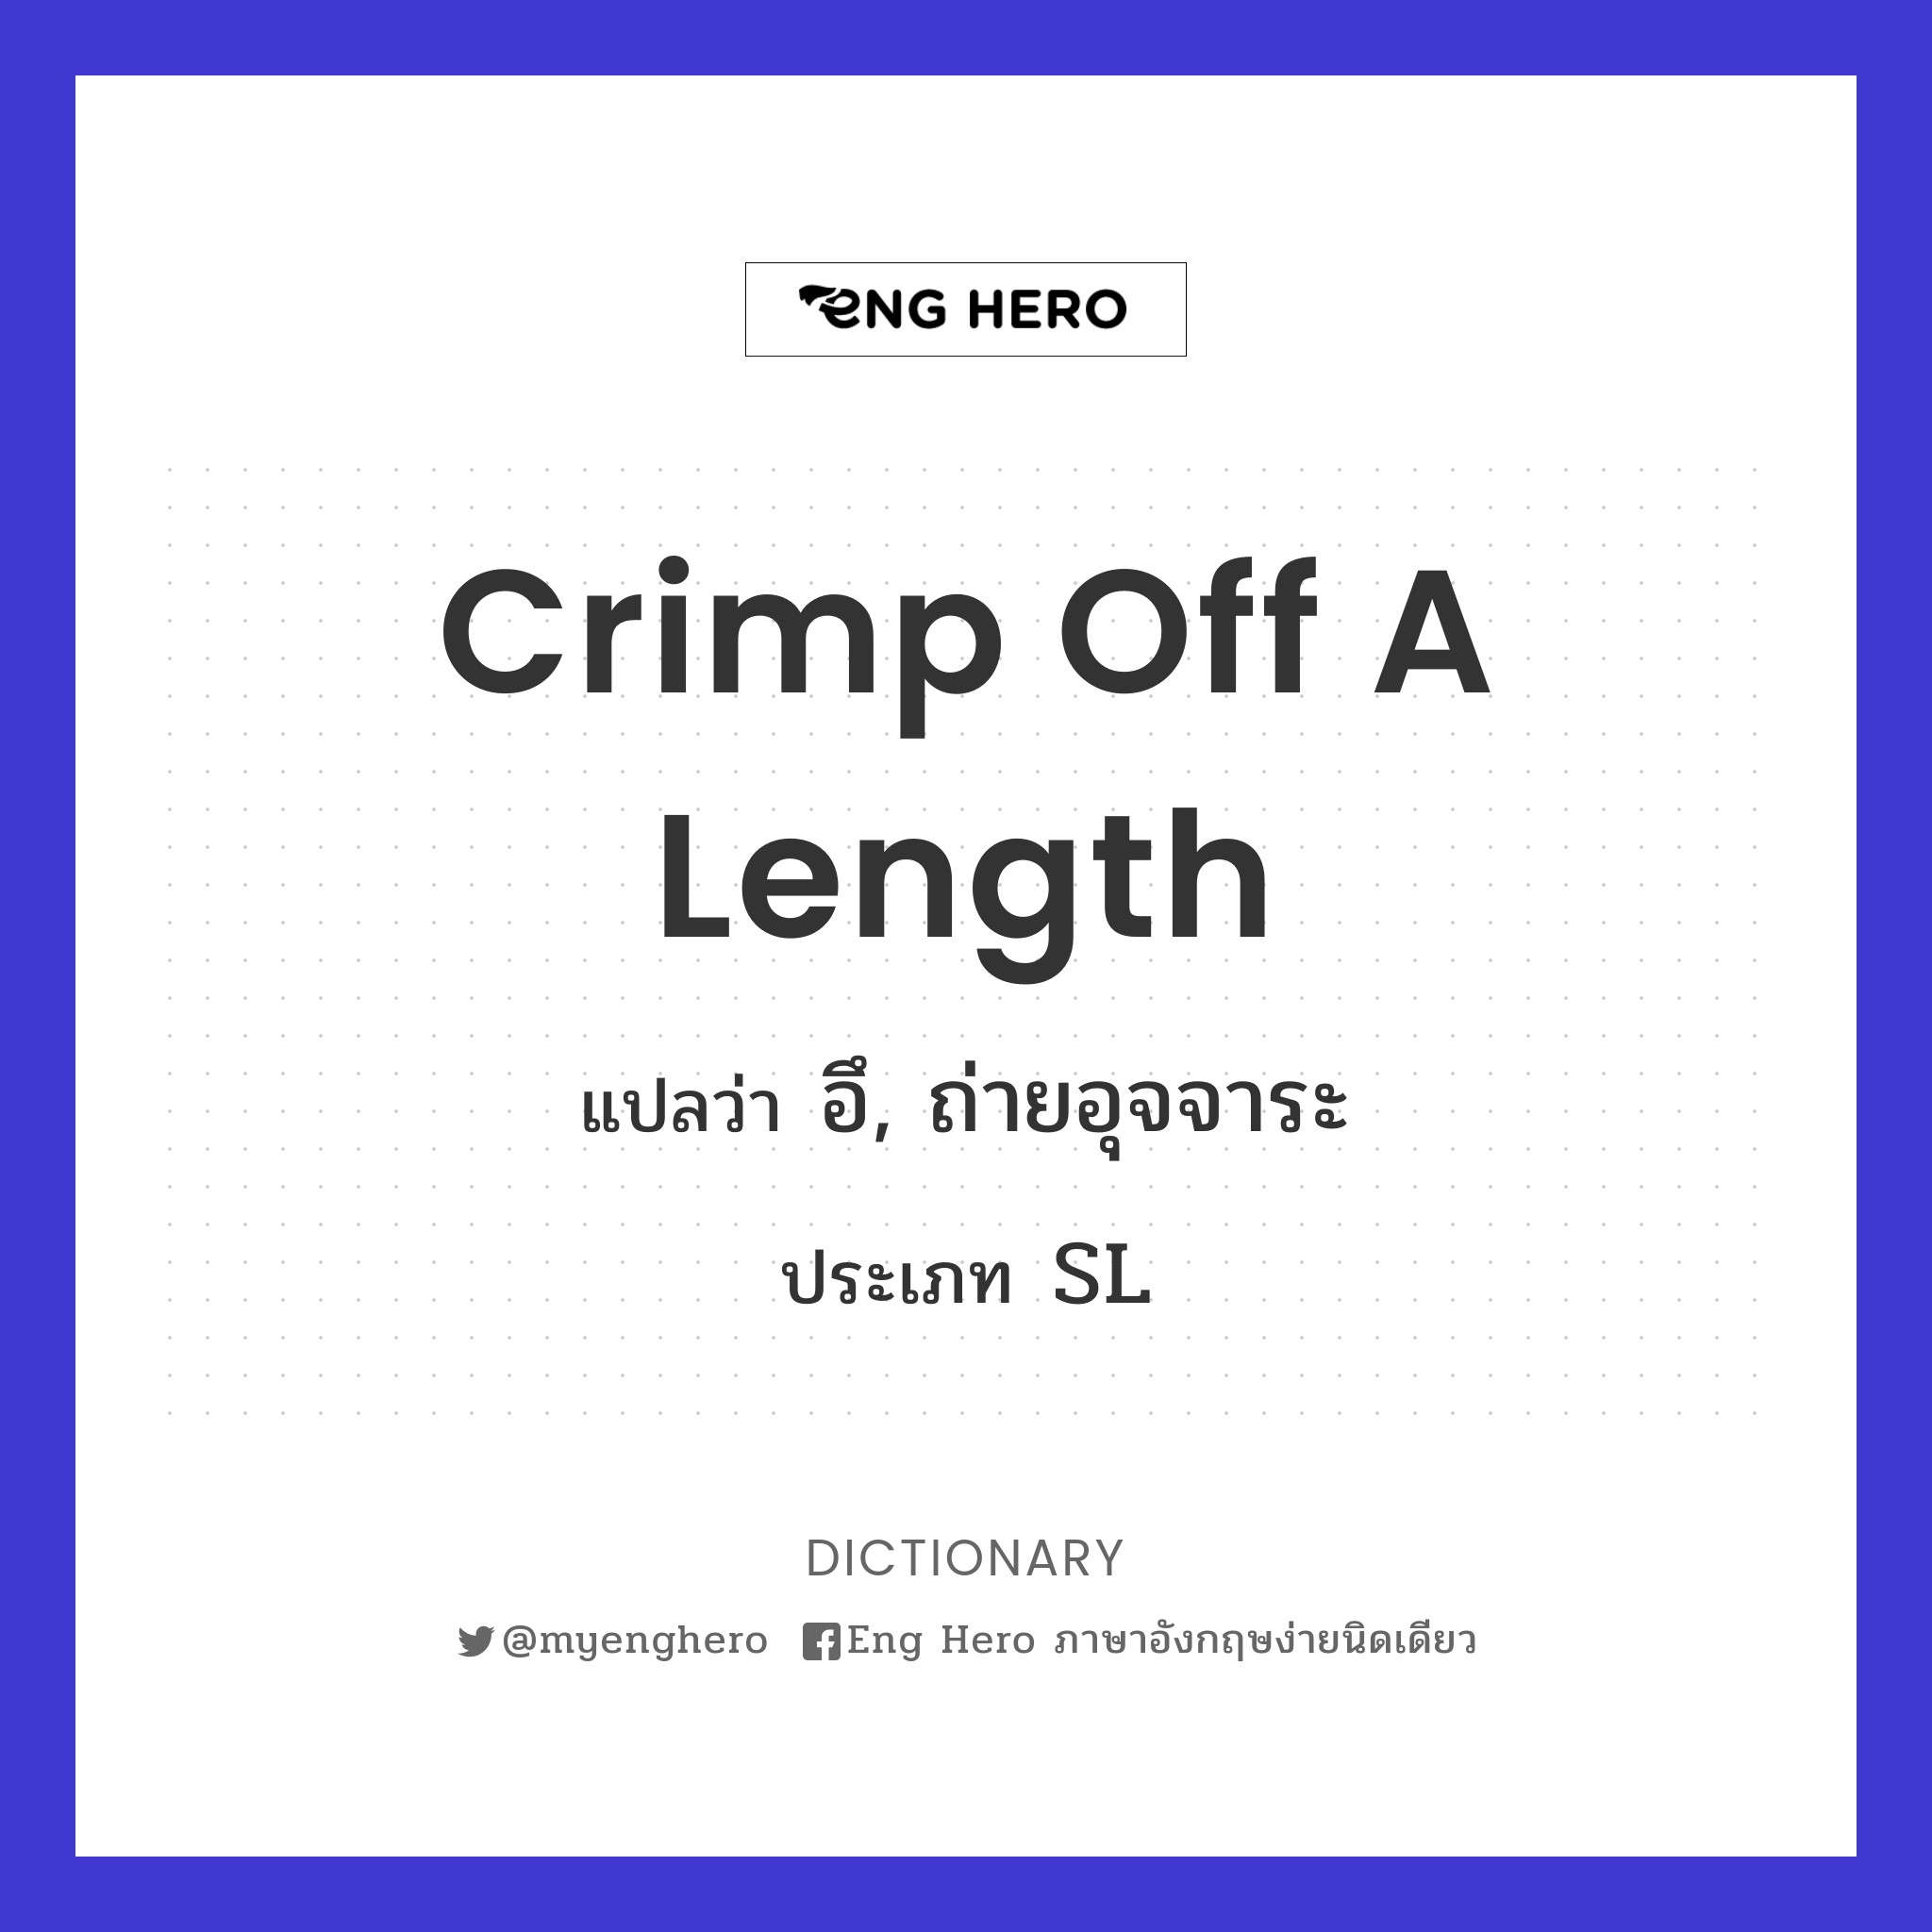 crimp off a length